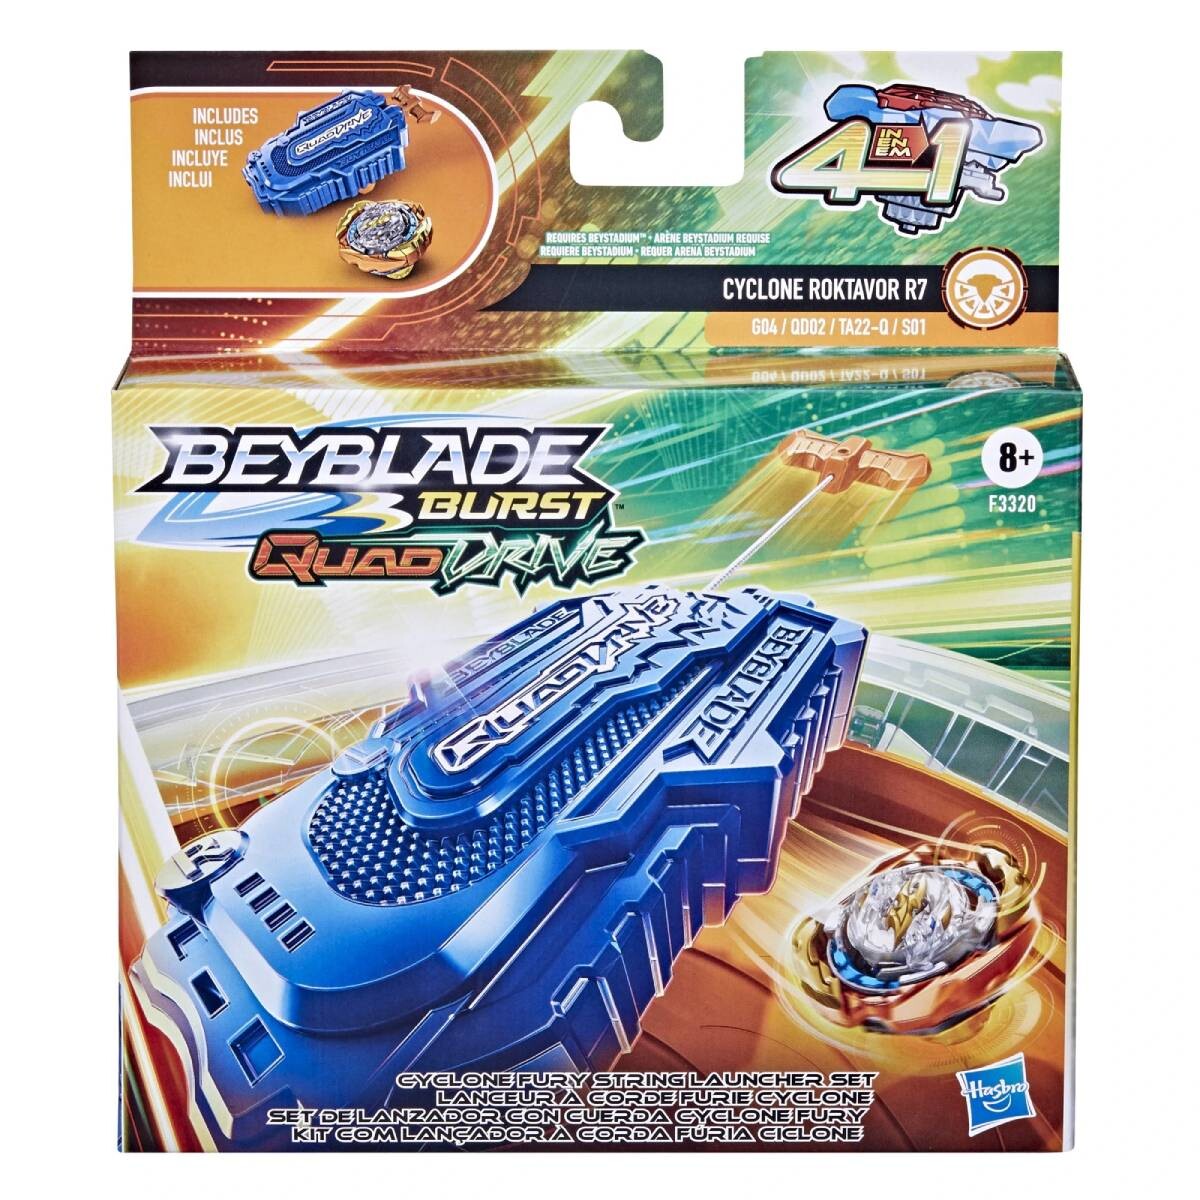 Beyblade Burst QuadDrive + Lanzador - Cyclone Roktavor 